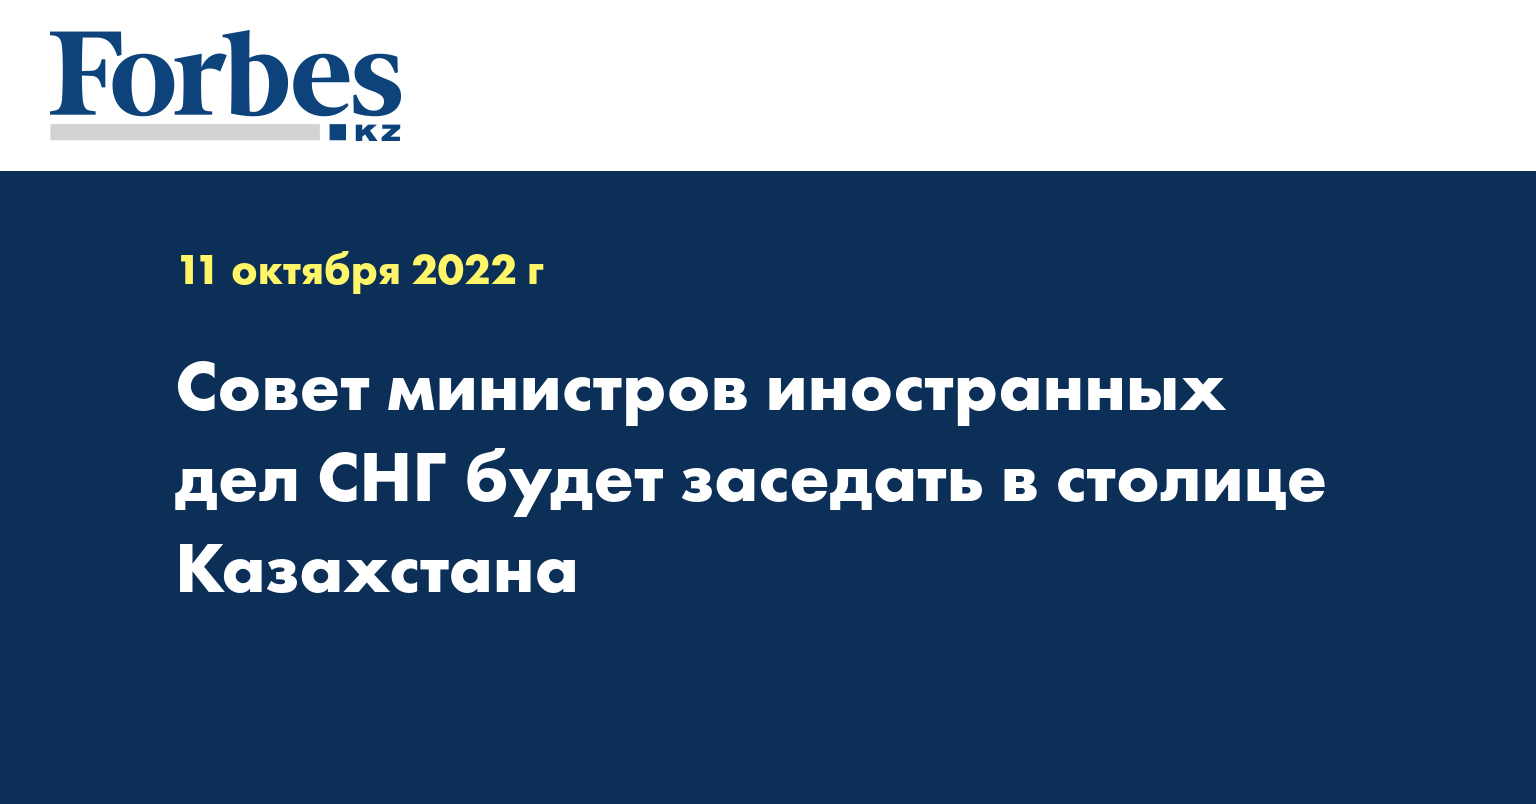 Совет министров иностранных дел СНГ будет заседать в столице Казахстана